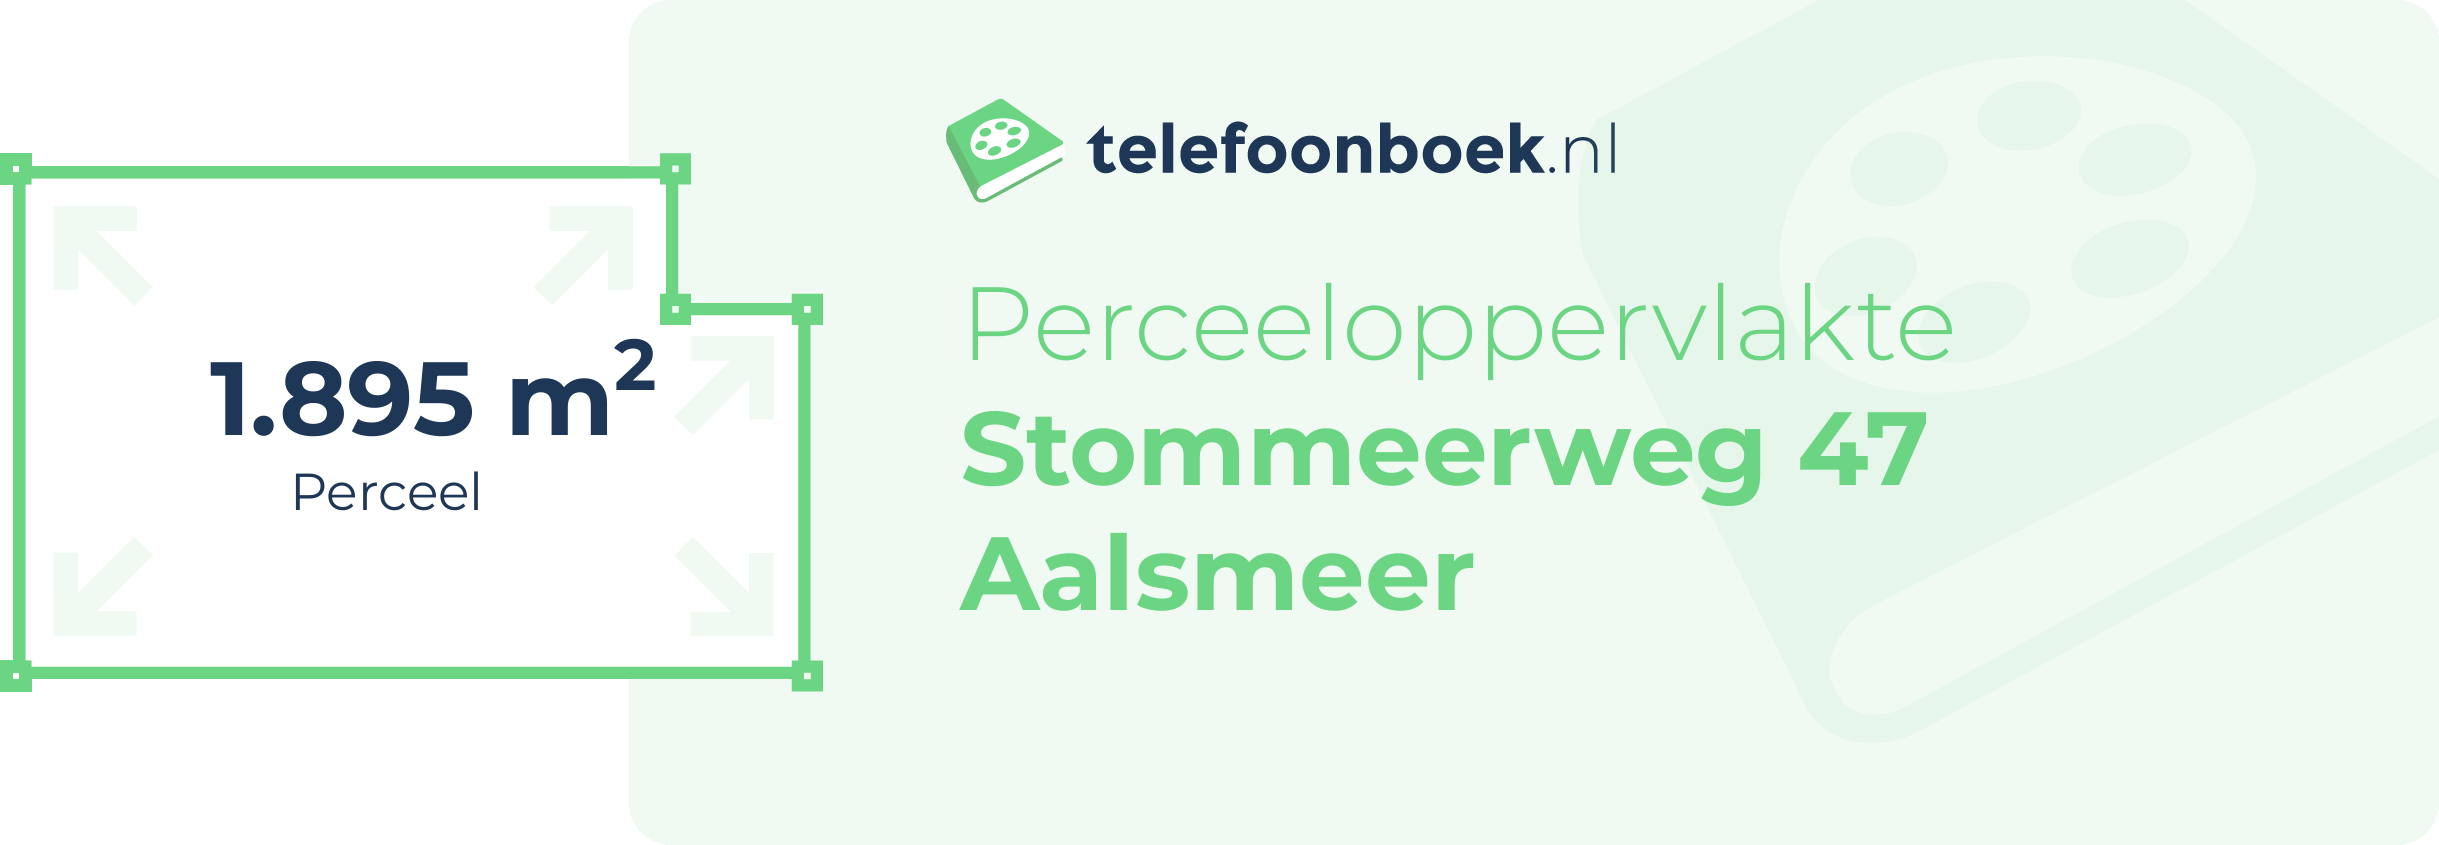 Perceeloppervlakte Stommeerweg 47 Aalsmeer